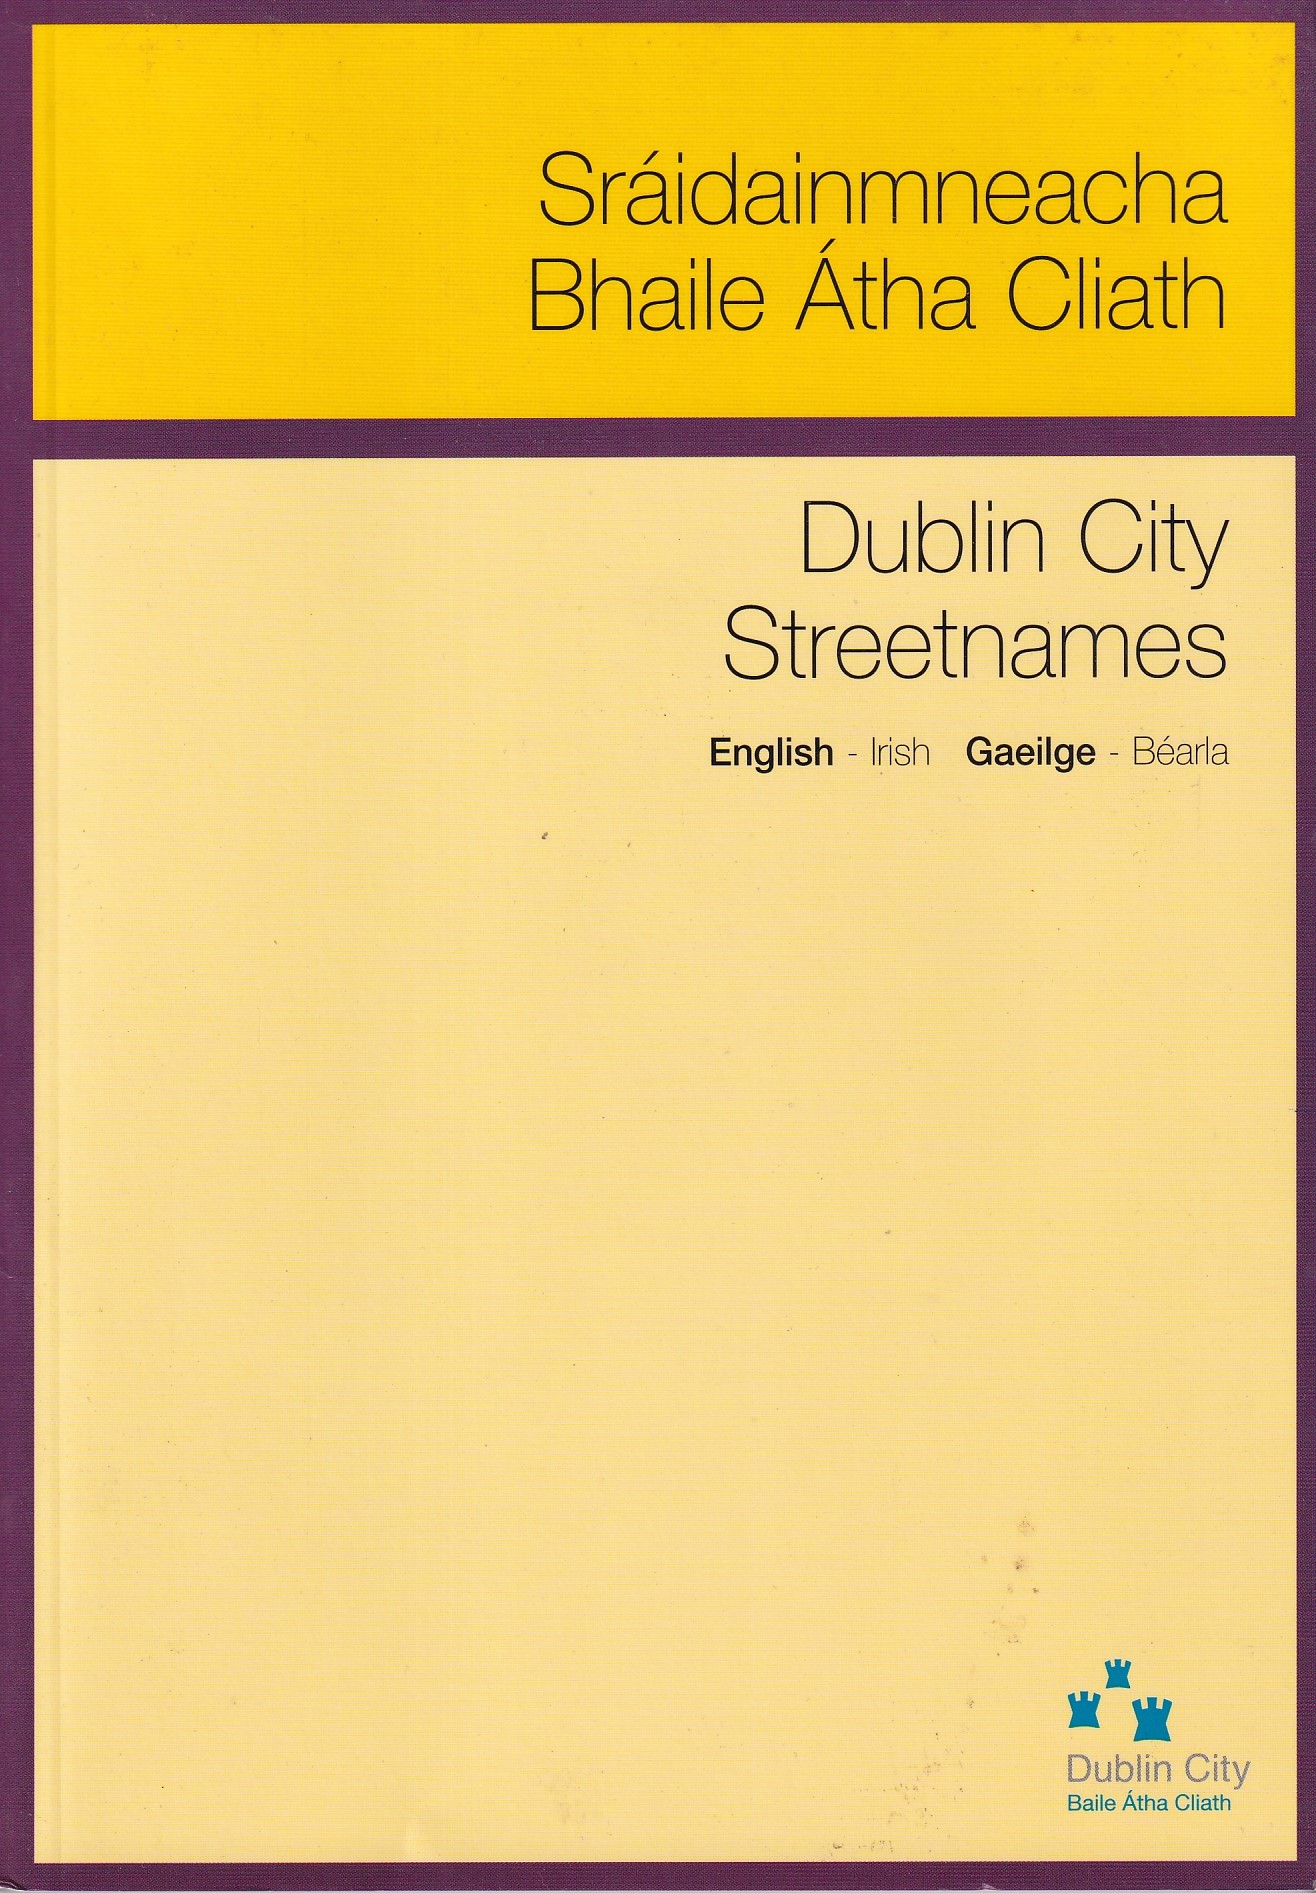 Sráidainmneacha Bhaile Átha Cliath – Dublin City Streetnames |  | Charlie Byrne's